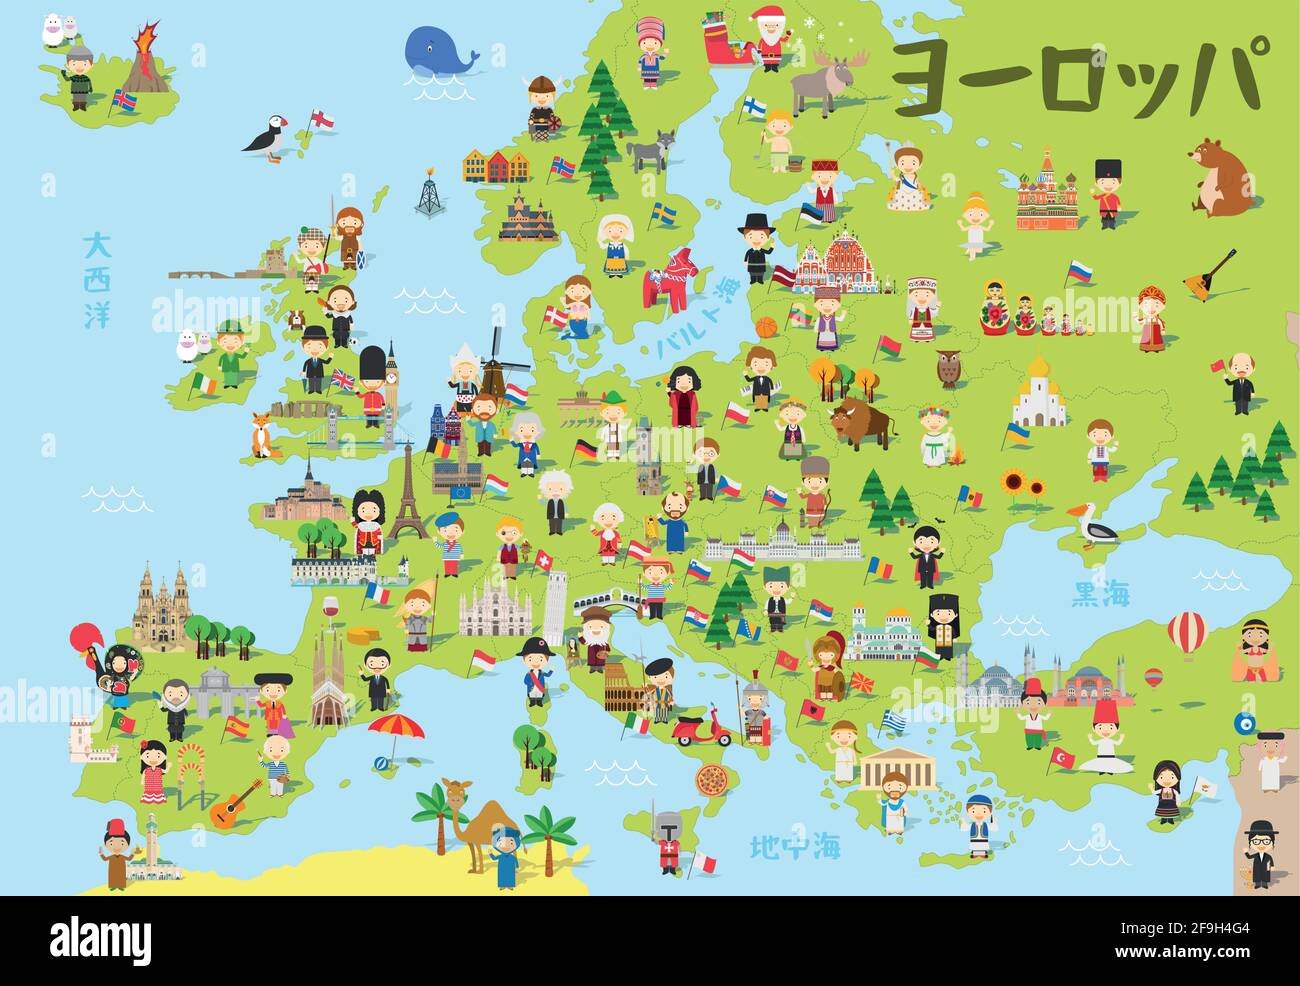 Divertente cartoni animati dell'Europa in giapponese con bambini di diverse nazionalità, monumenti rappresentativi, animali e oggetti di tutti i paesi. Illustrazione Vettoriale